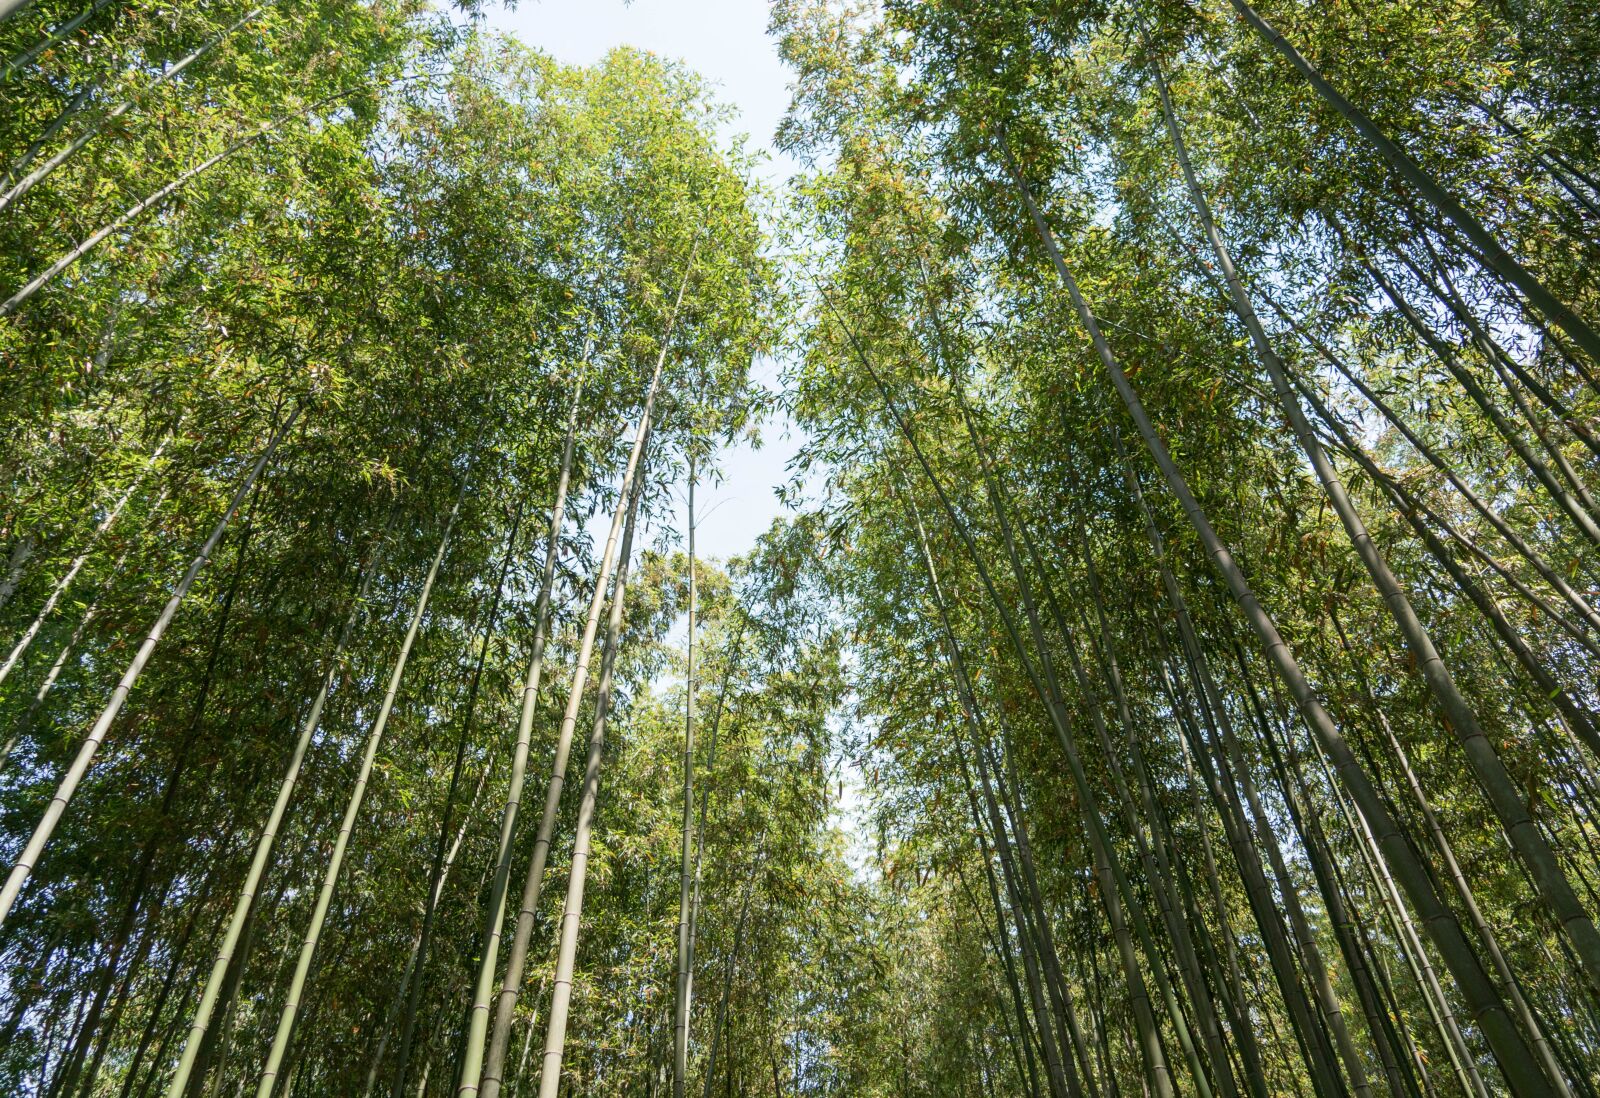 Sony a7R II sample photo. Japan, arashiyama, bamboo forest photography